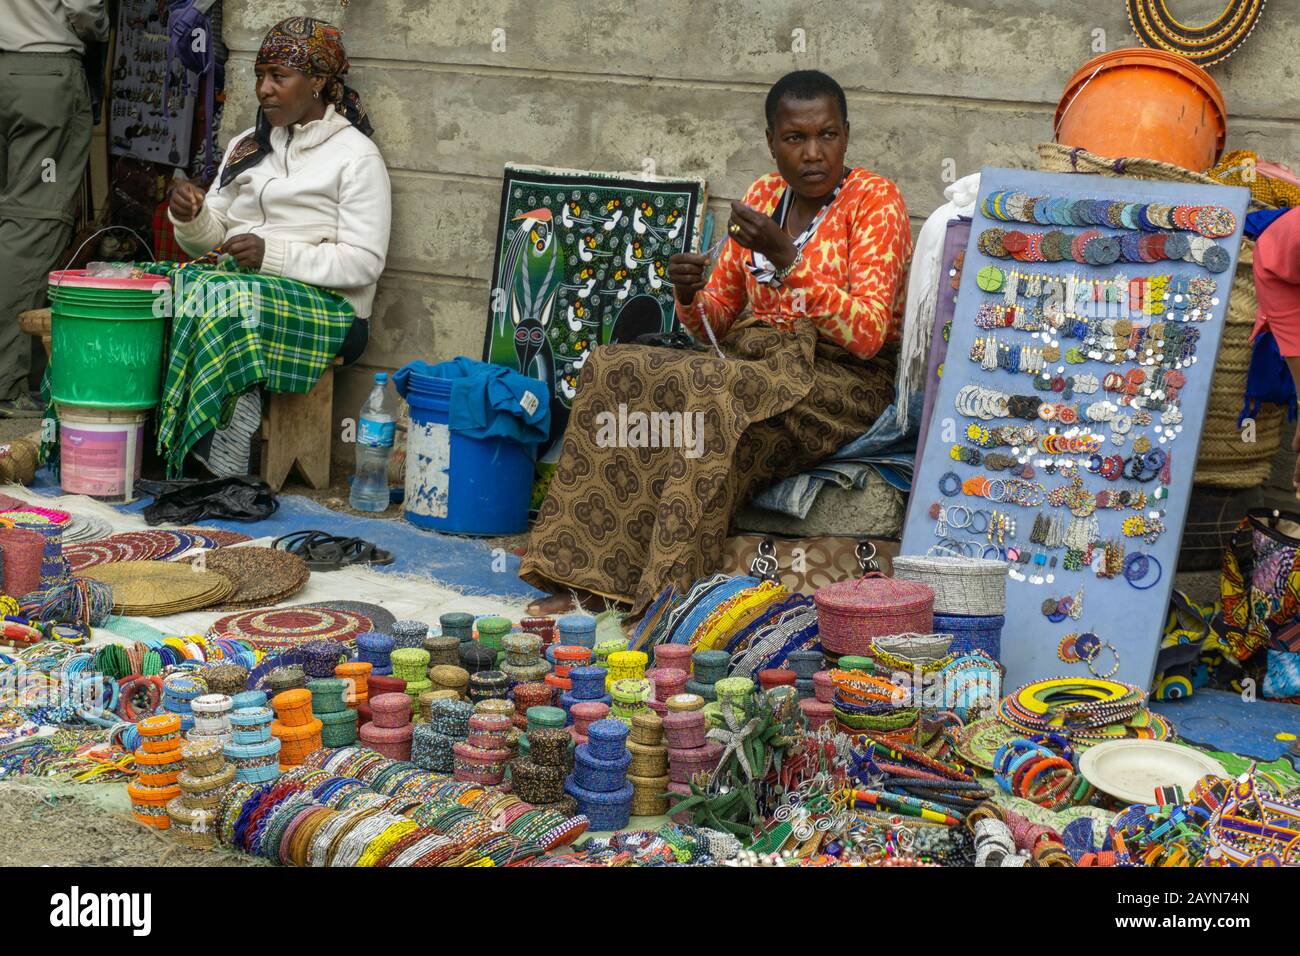 Arusha, TANZANIE - 16 AOÛT 2017: Les gens au marché central d'Arusha avec masai artisanat à vendre Banque D'Images